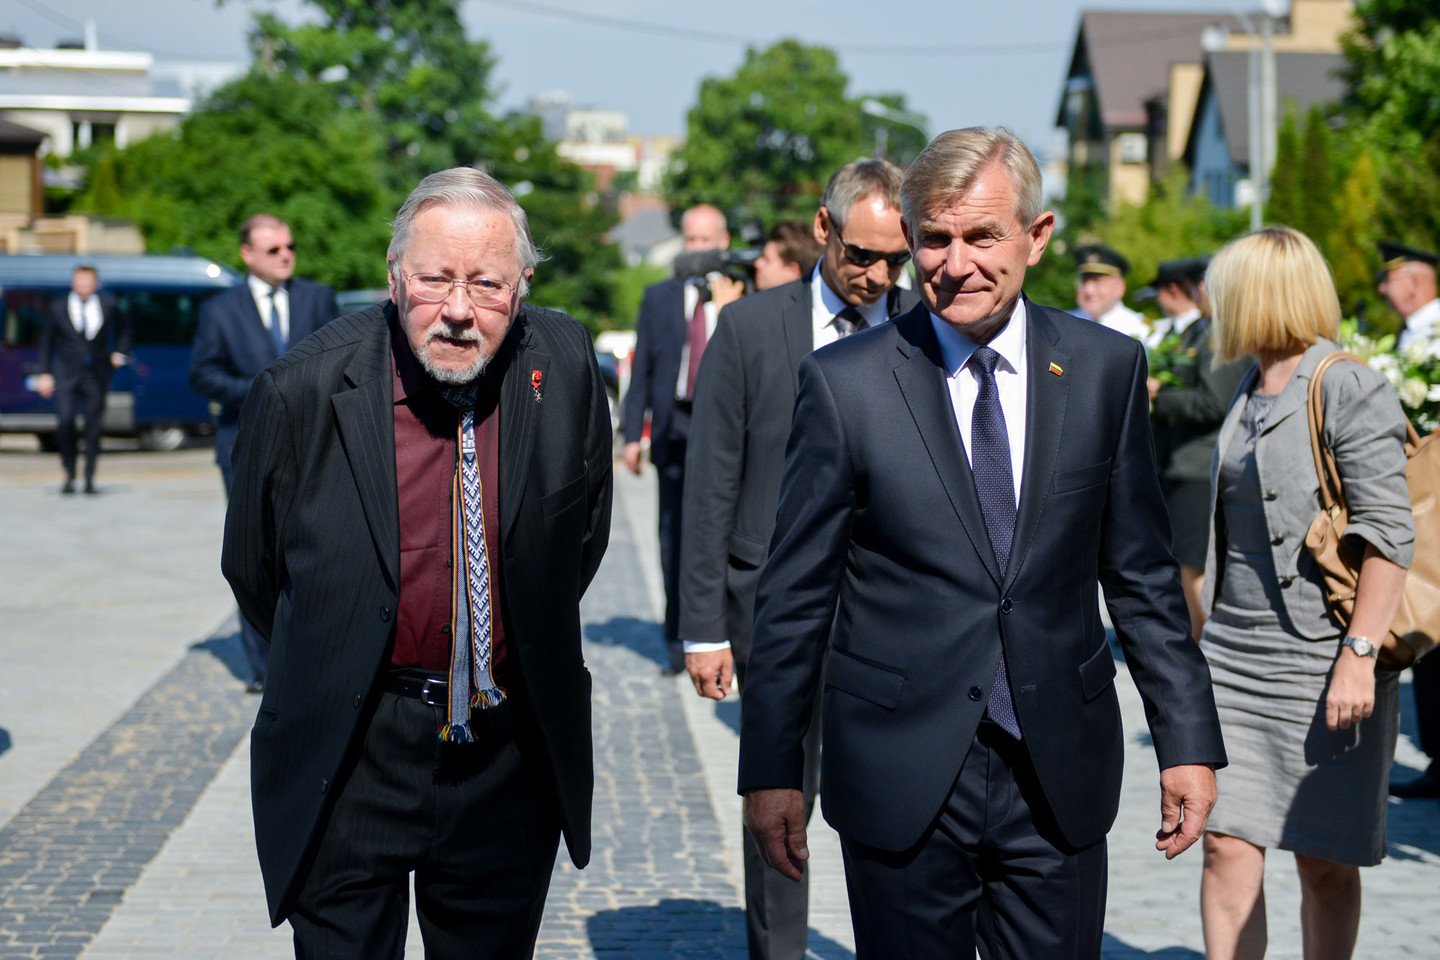  Seimo pirmininkas Viktoras Pranckietis įgėlė Vytautui Landsbergiui.<br> J.Stacevičiaus nuotr. 